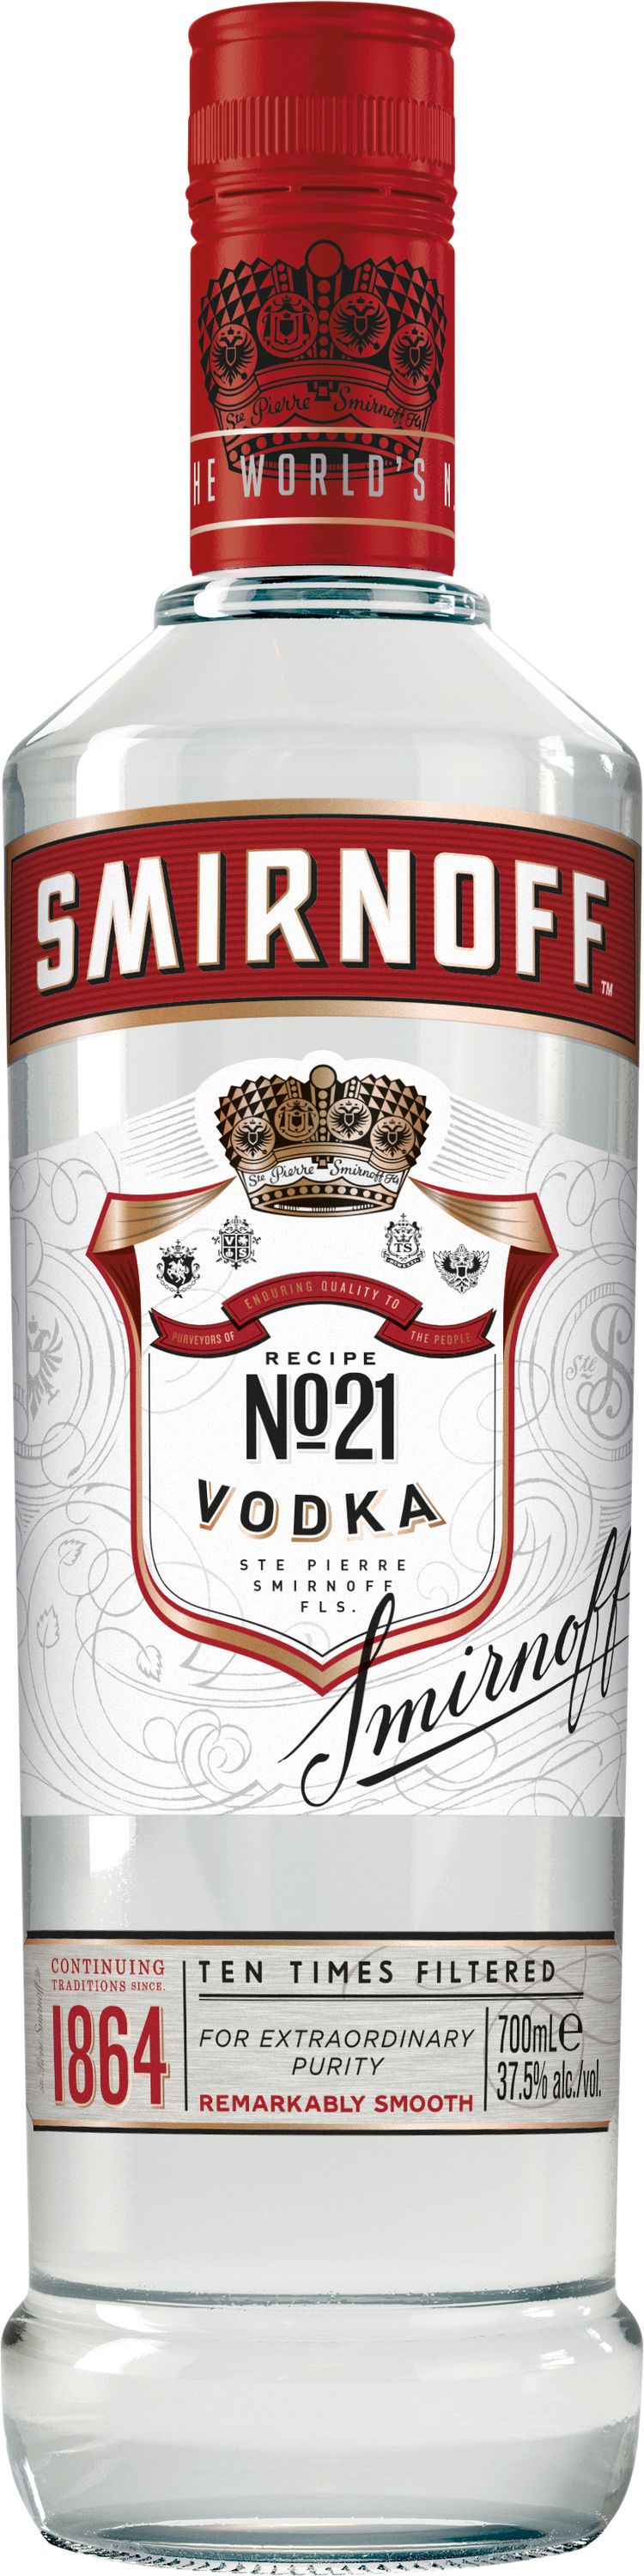 Smirnoff 1000ml 37,5% Vol. Red Vodka Label | Mega-Einkaufsparadies